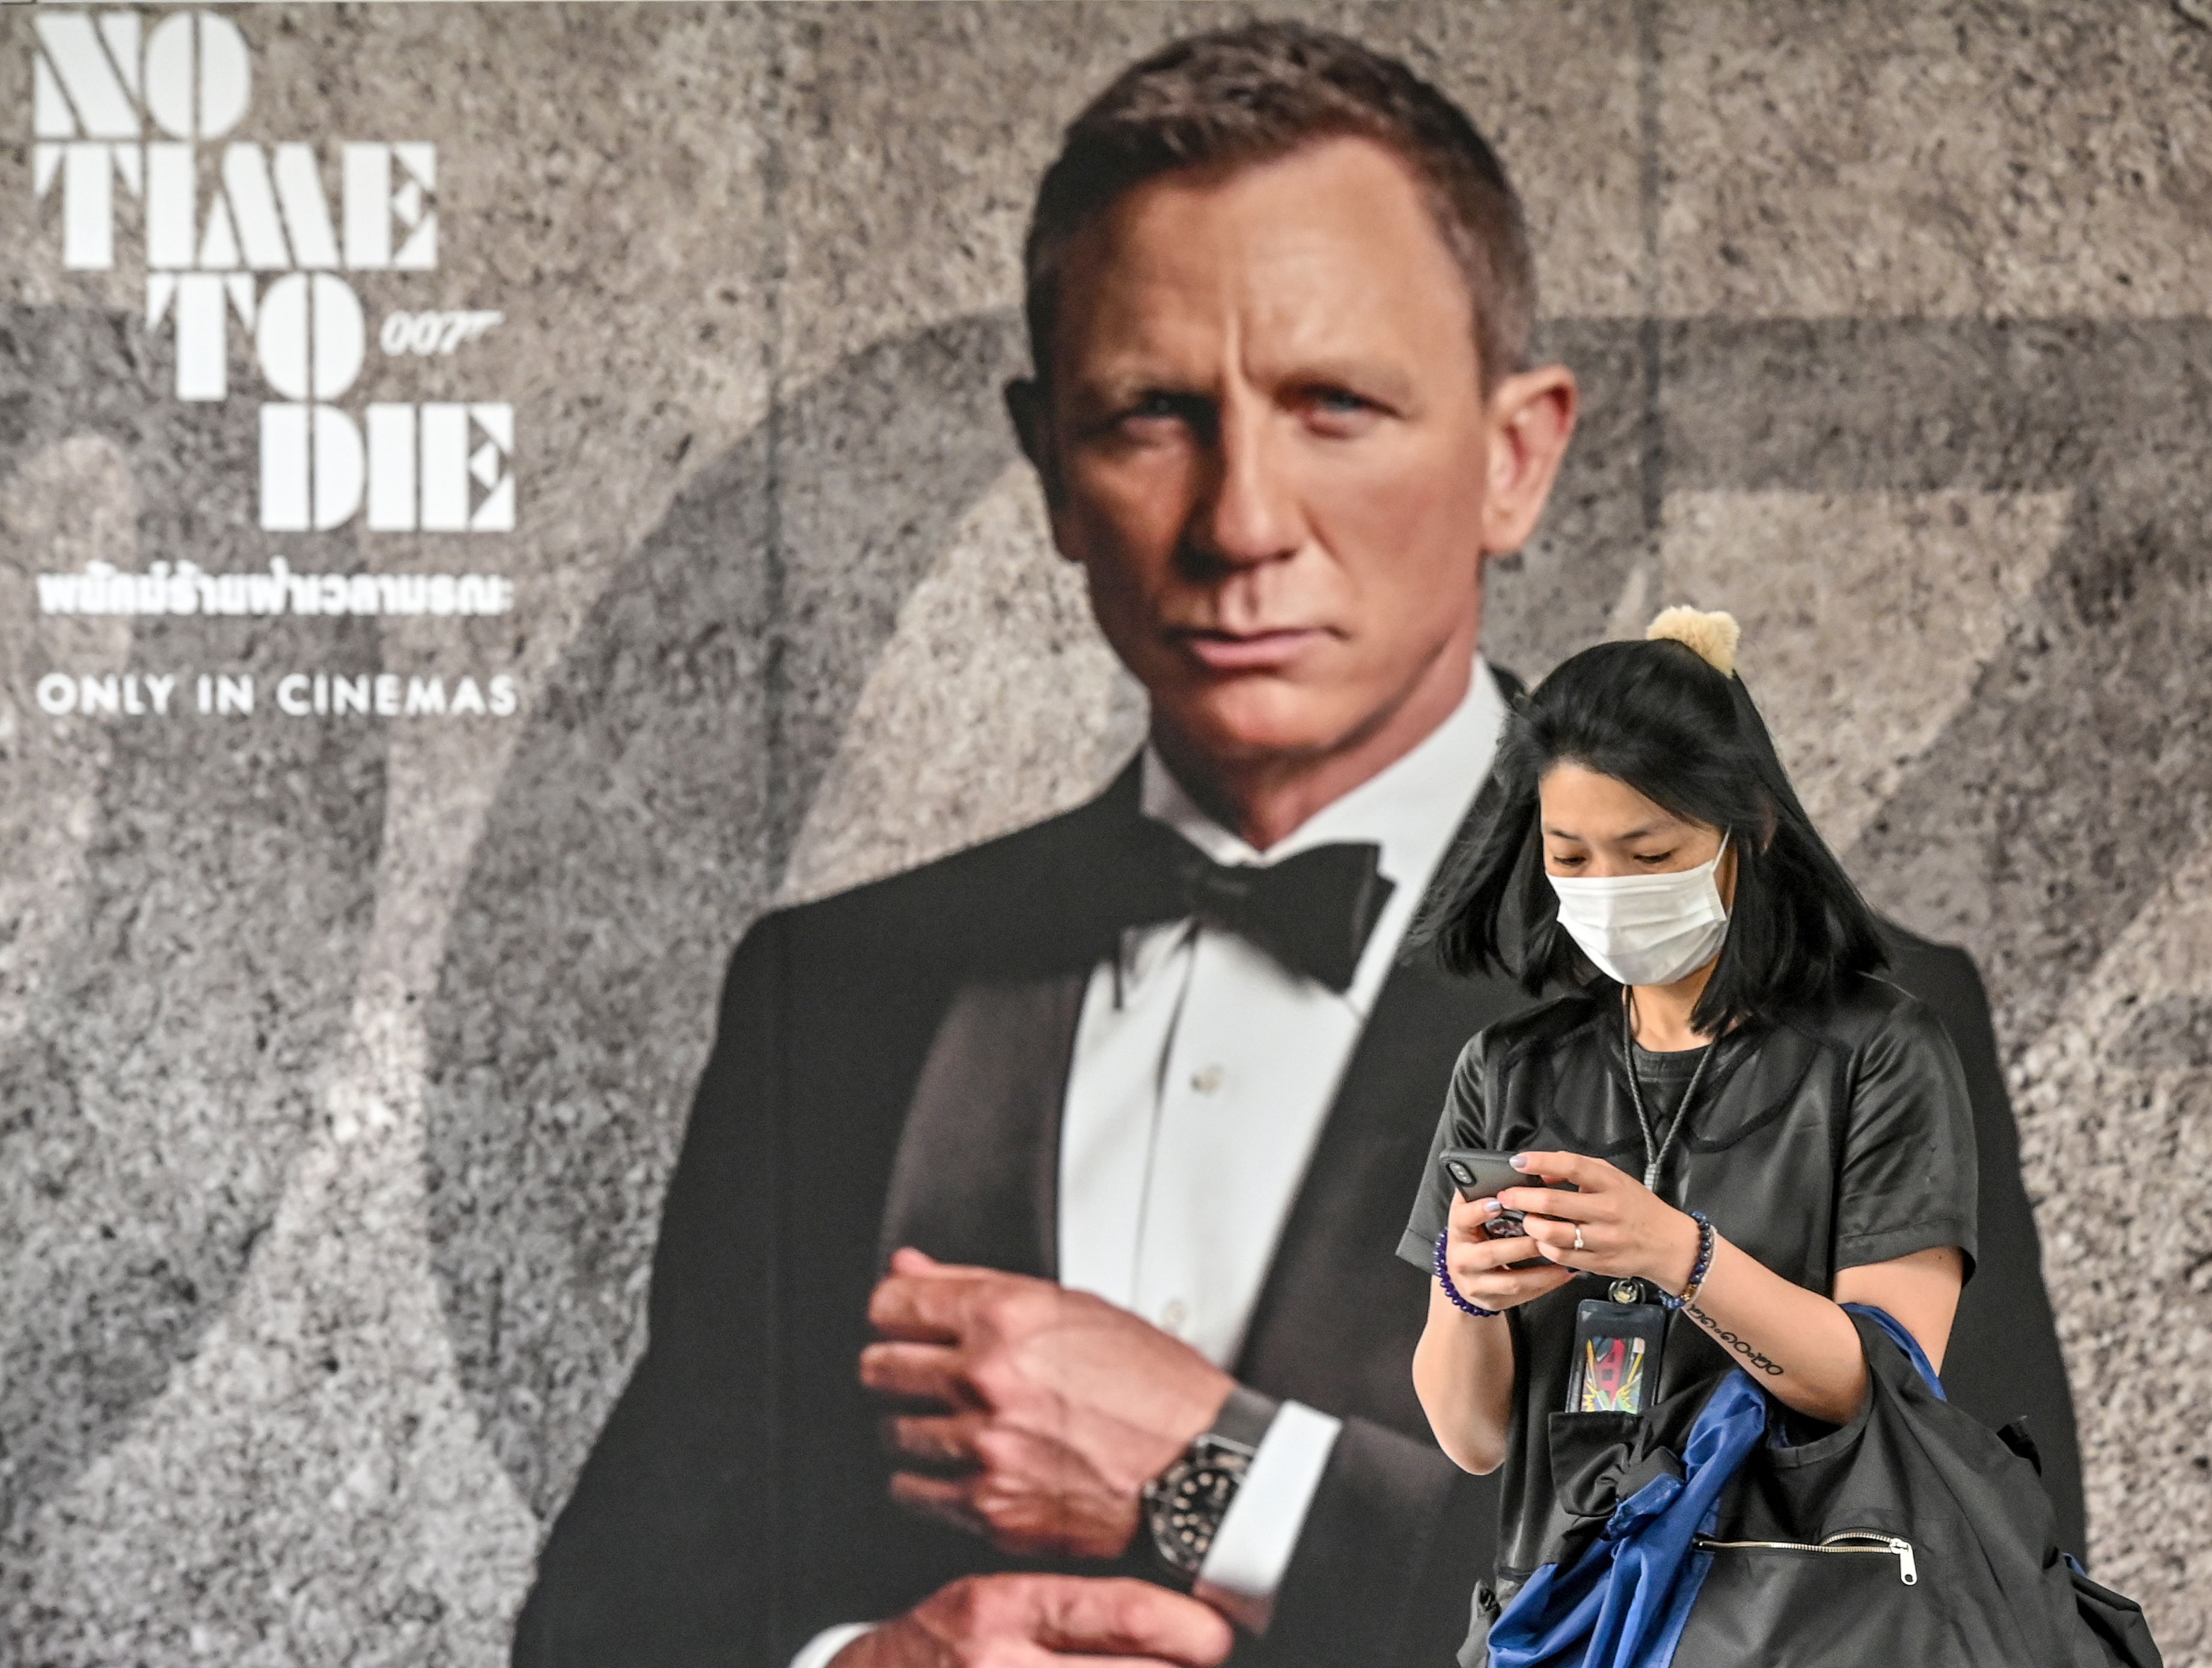 La nueva película de James Bond "No hay tiempo para morir" se retrasa hasta noviembre después de los temores de coronavirus según el estudio. (Foto Prensa Libre: AFP)